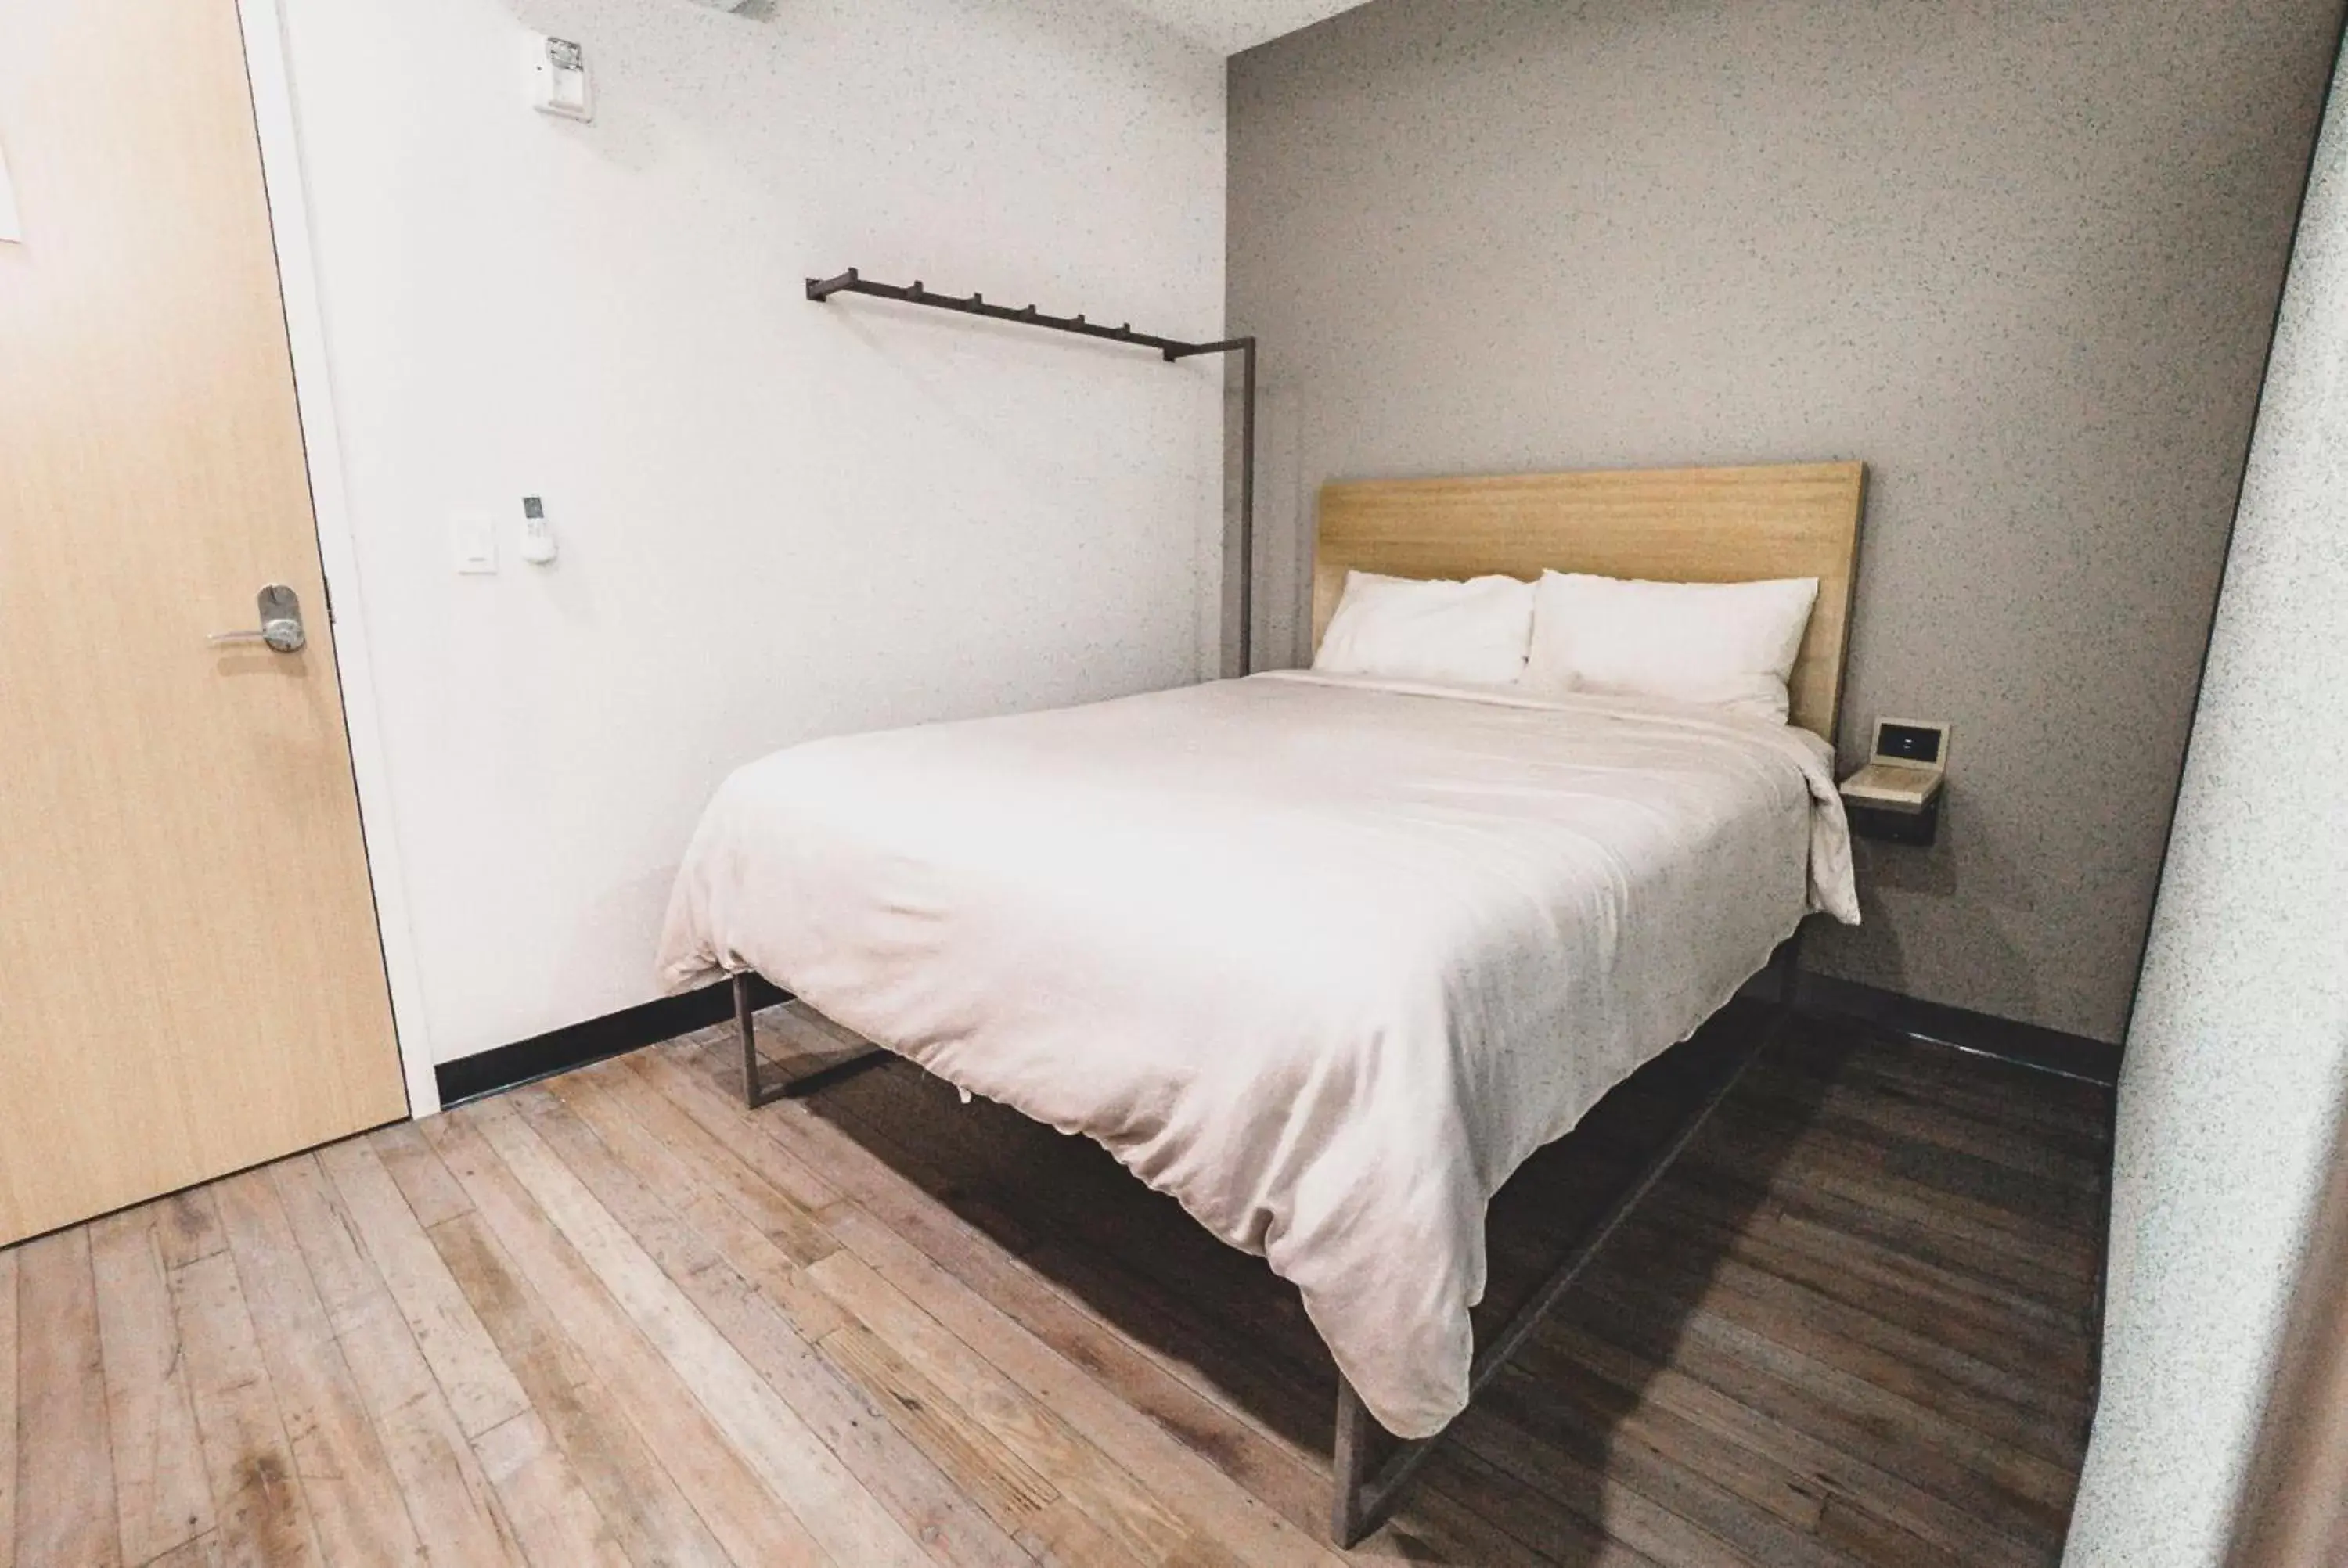 Bed in SOVA Micro-Room & Social Hotel